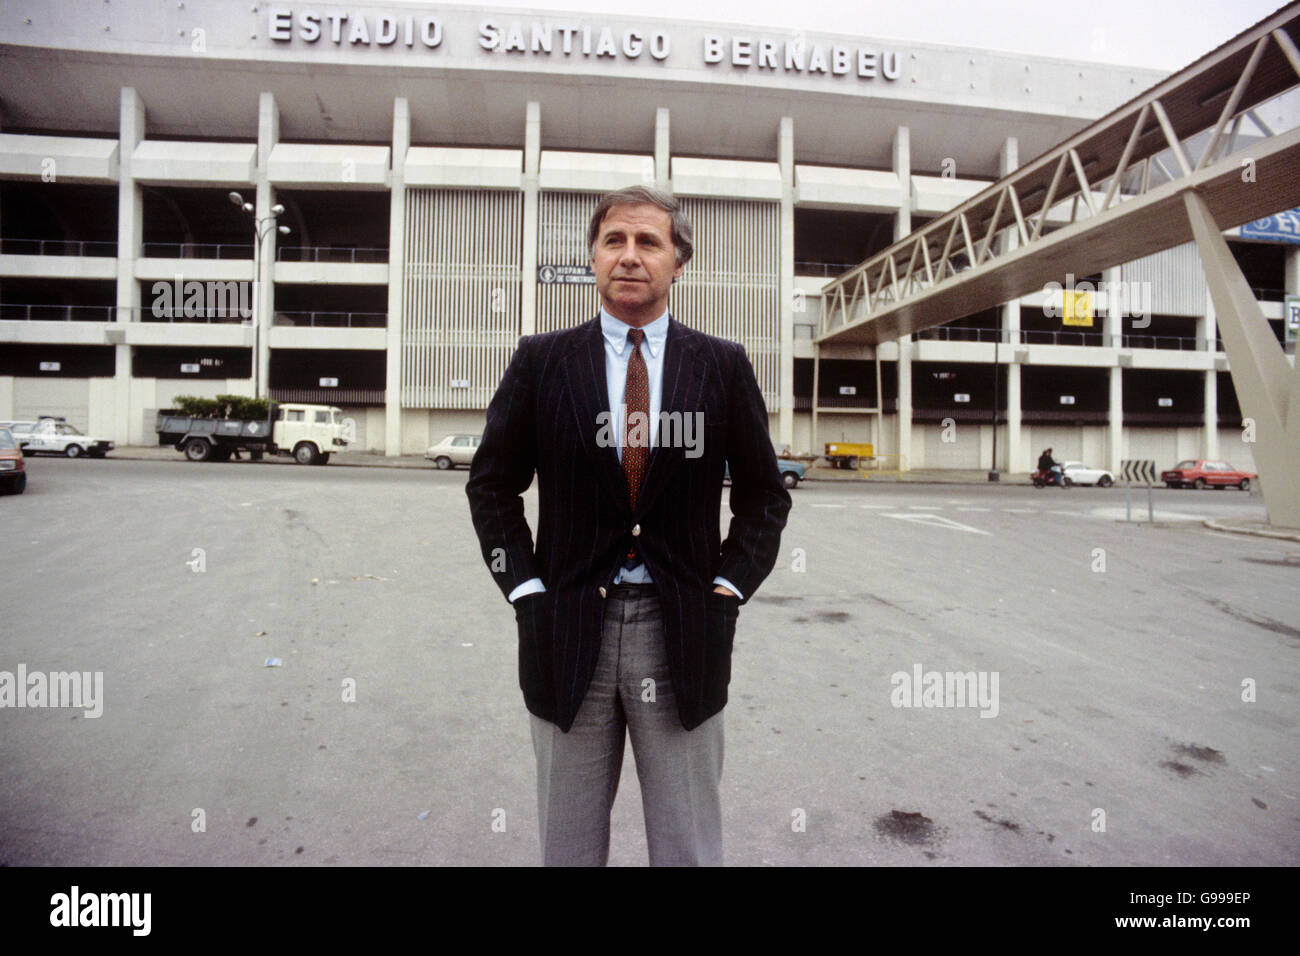 L'allenatore francese Michel Hidalgo fuori dall'Estadio Santiago Bernabeu a Madrid, il giorno dopo il sorteggio per le finali della Coppa del mondo 1982 è stato fatto Foto Stock